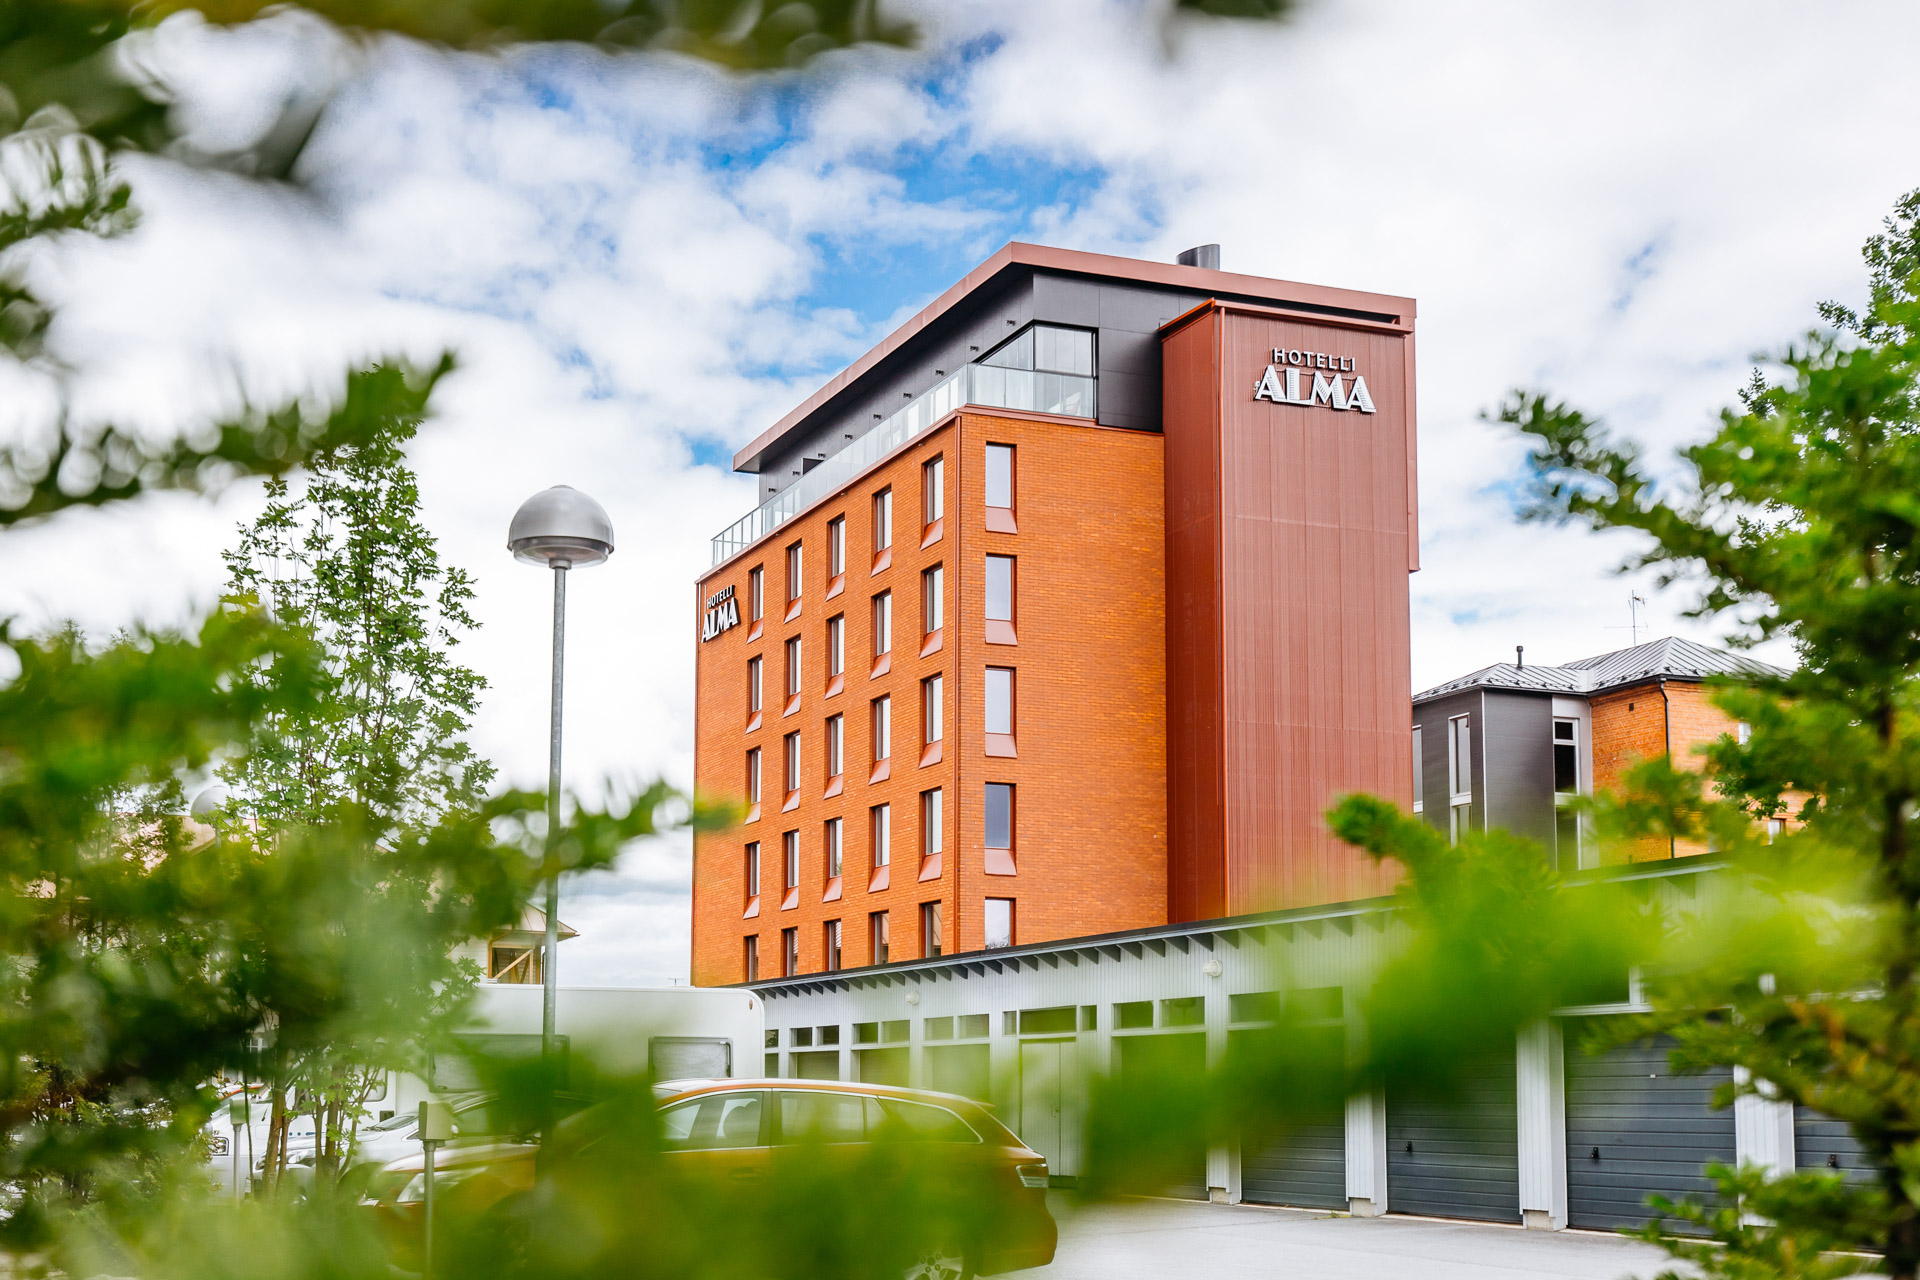 Hotelli Alma UKI Arkkitehdit yleiskuva hotellin julkisivusta